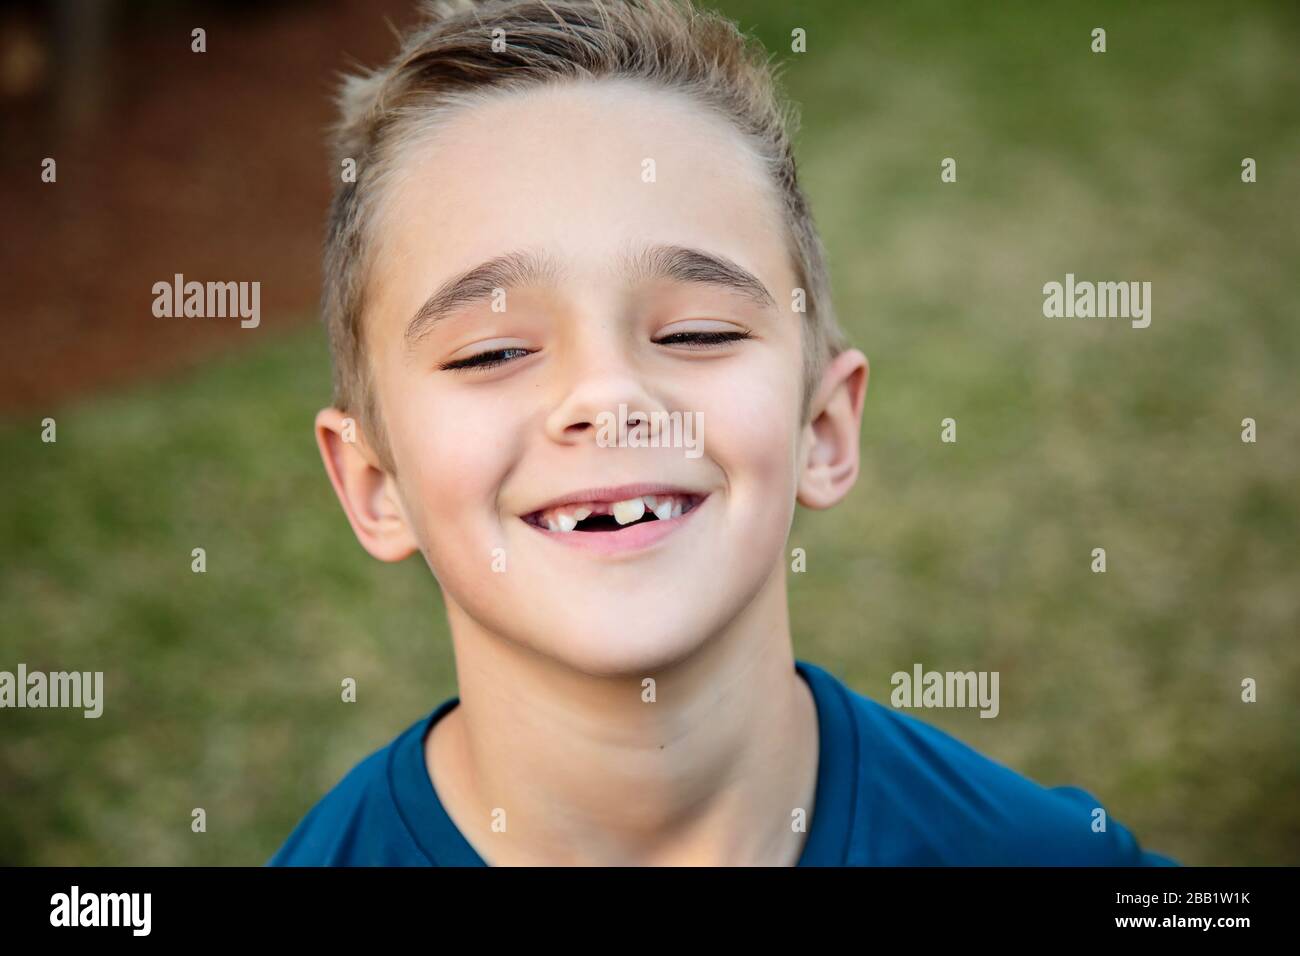 Gros plan d'un jeune garçon souriant avec sa tête inclinée un peu vers le haut, il a quelques dents manquantes Banque D'Images